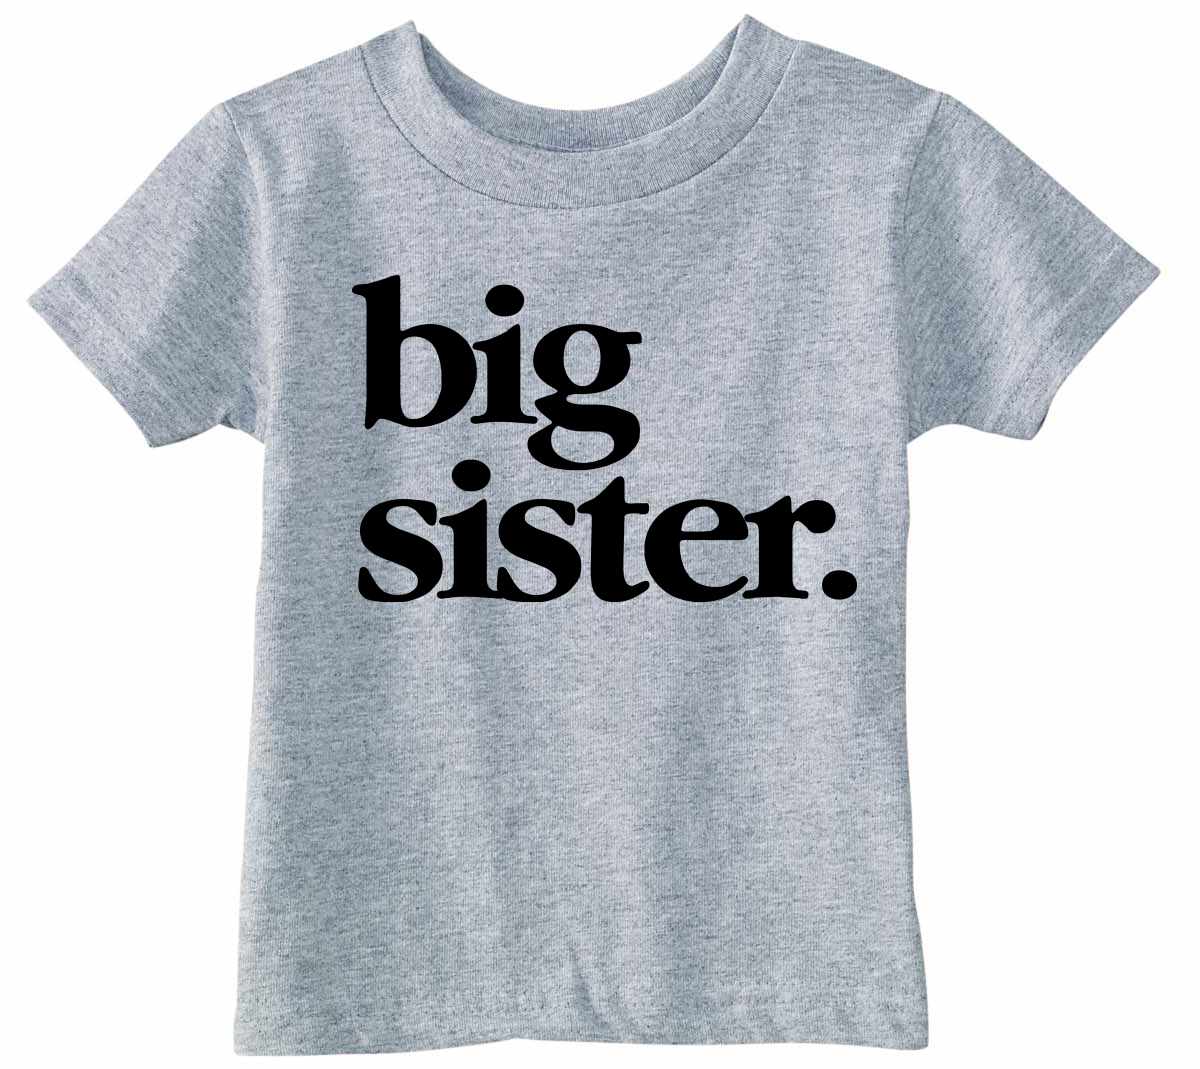 Big Sister on Infant-Toddler T-Shirt (#1319-7)